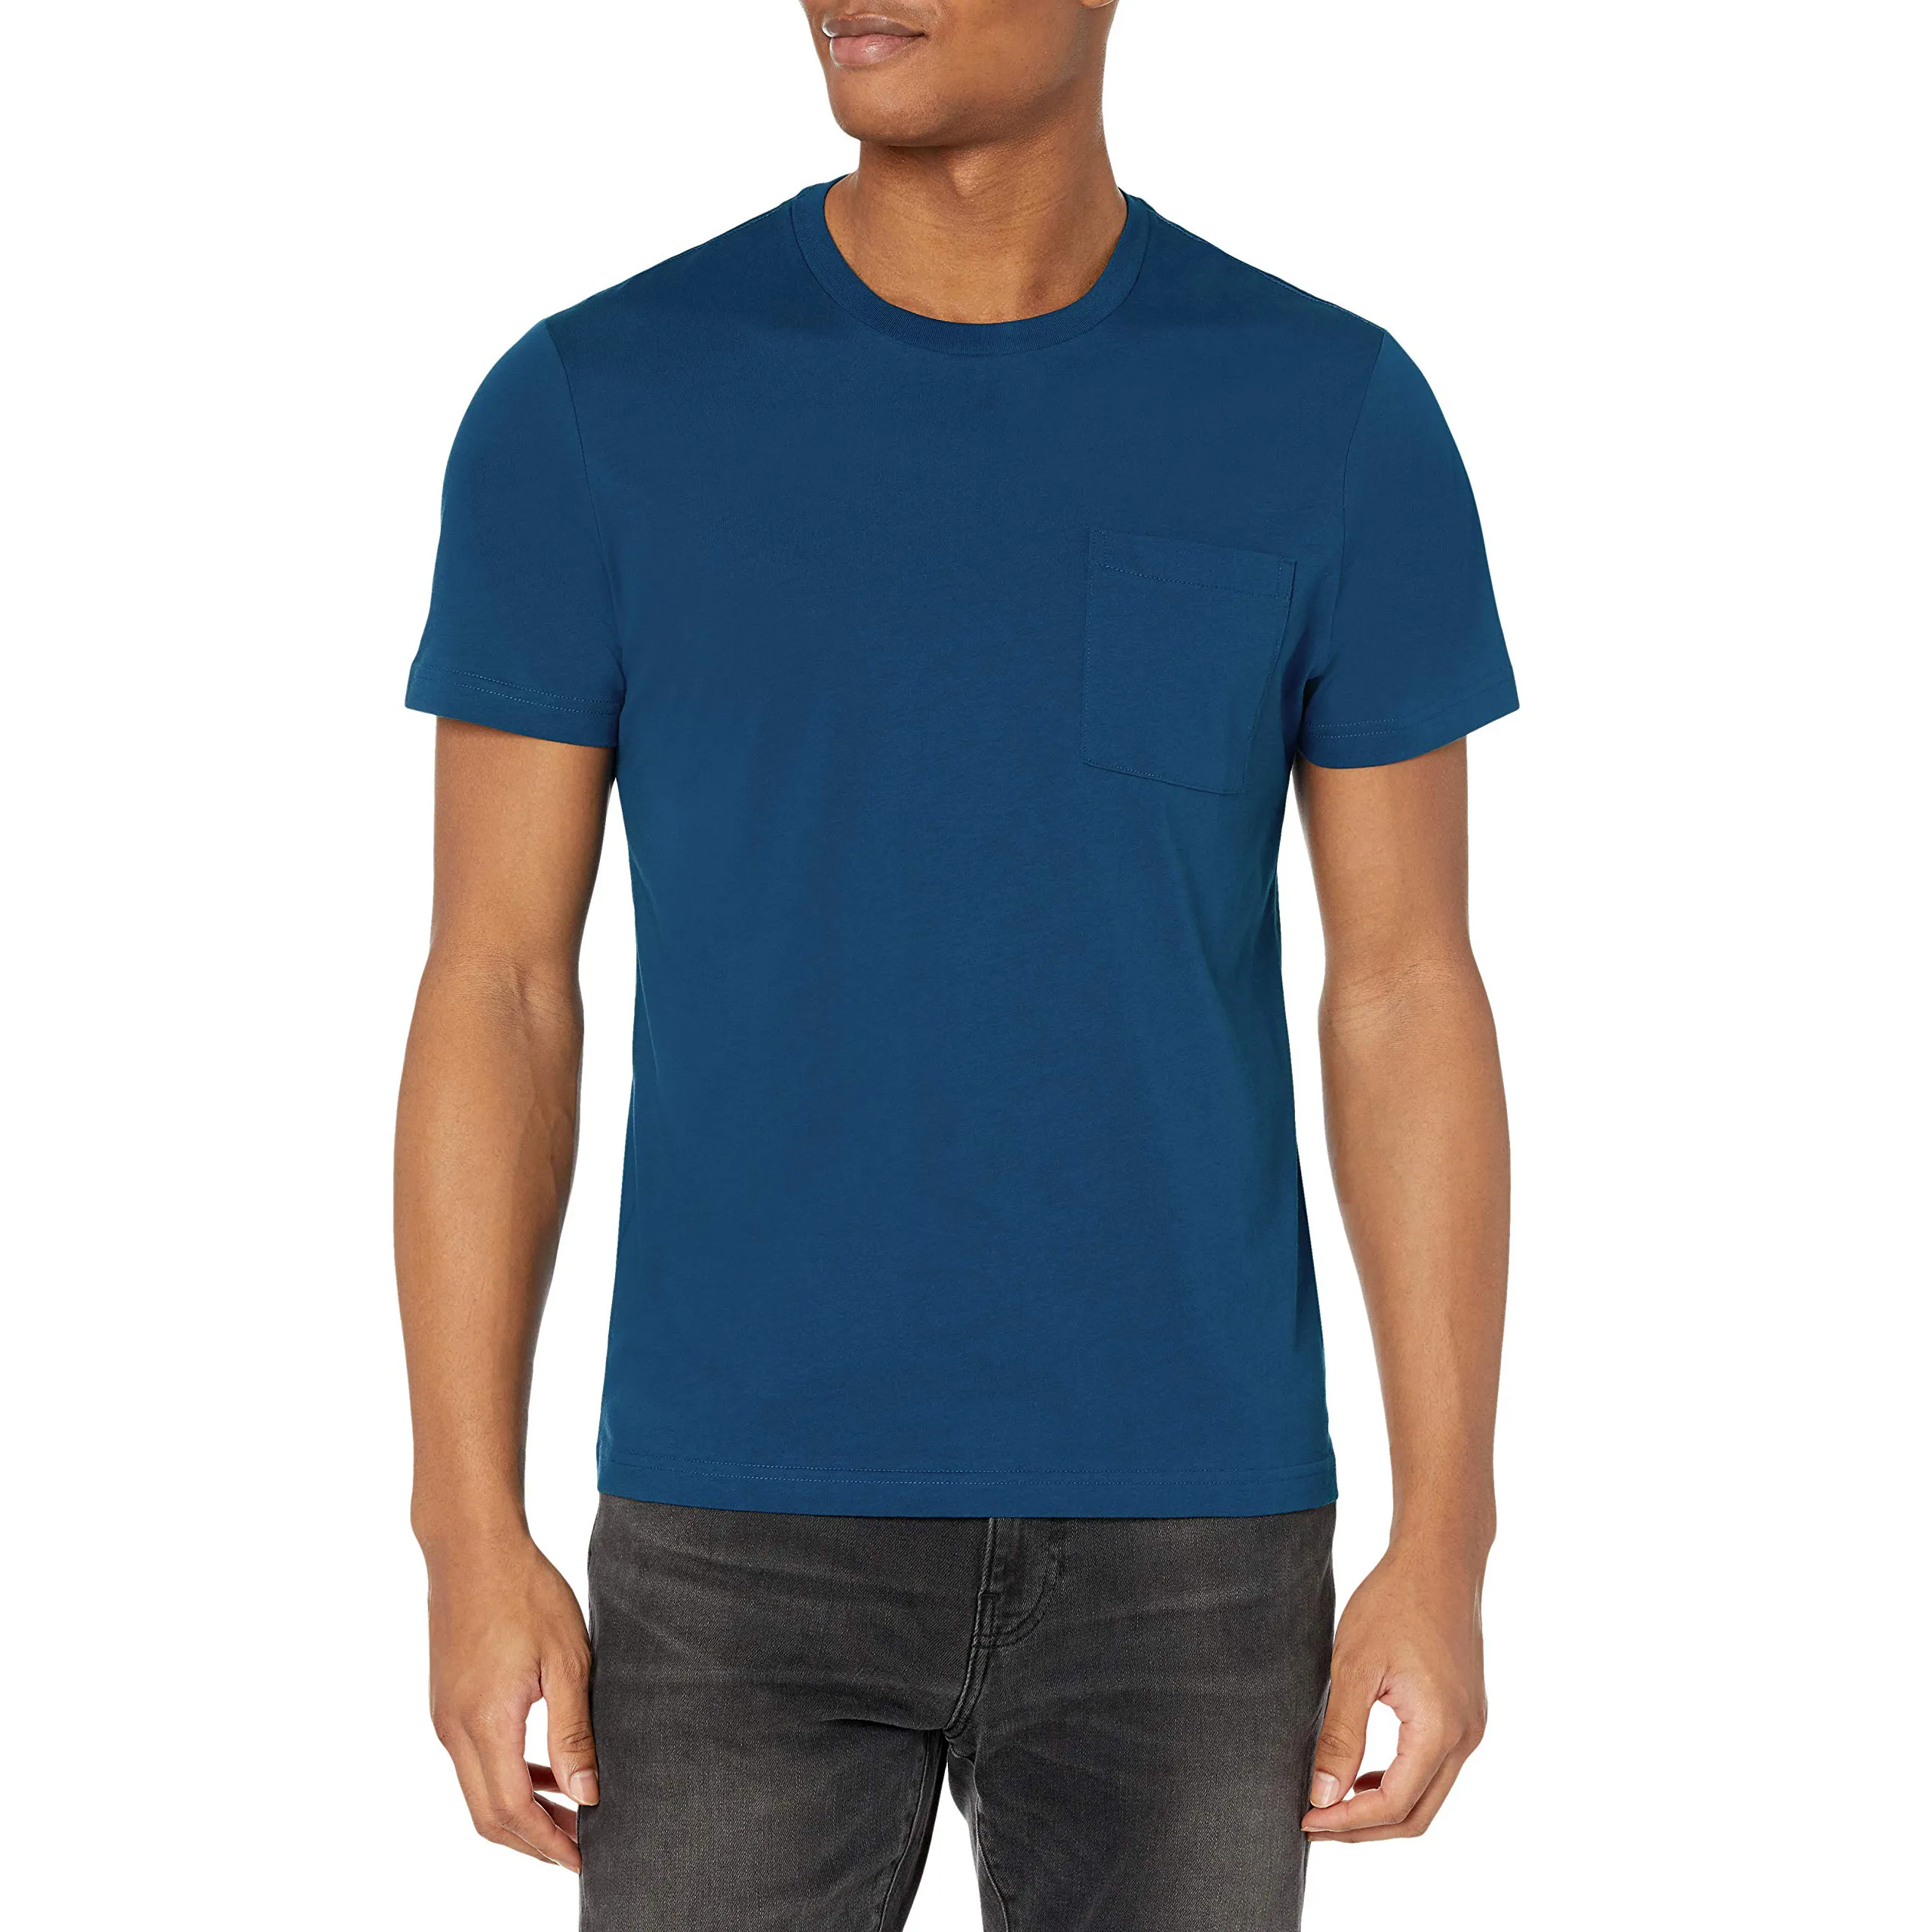 फैक्ट्री ने पुरुषों की लुभावनी टी शर्ट को पाक में बनाया गया सबसे अच्छा ग्रीष्मकालीन पहनने वाले पुरुषों टी शर्ट